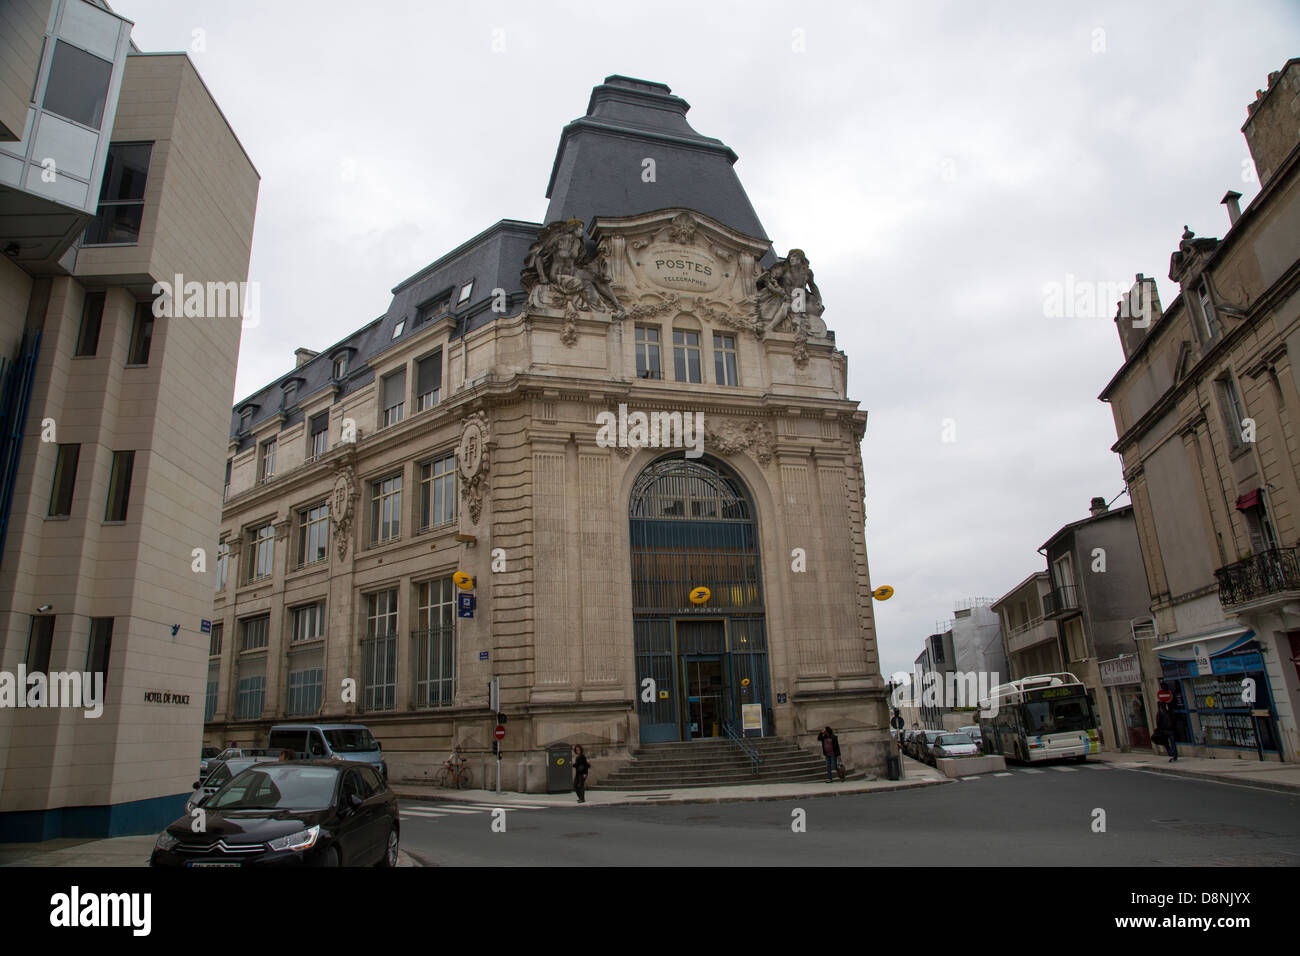 La oficina principal de correos de Poitiers ciudad central ornamentado edificio Foto de stock